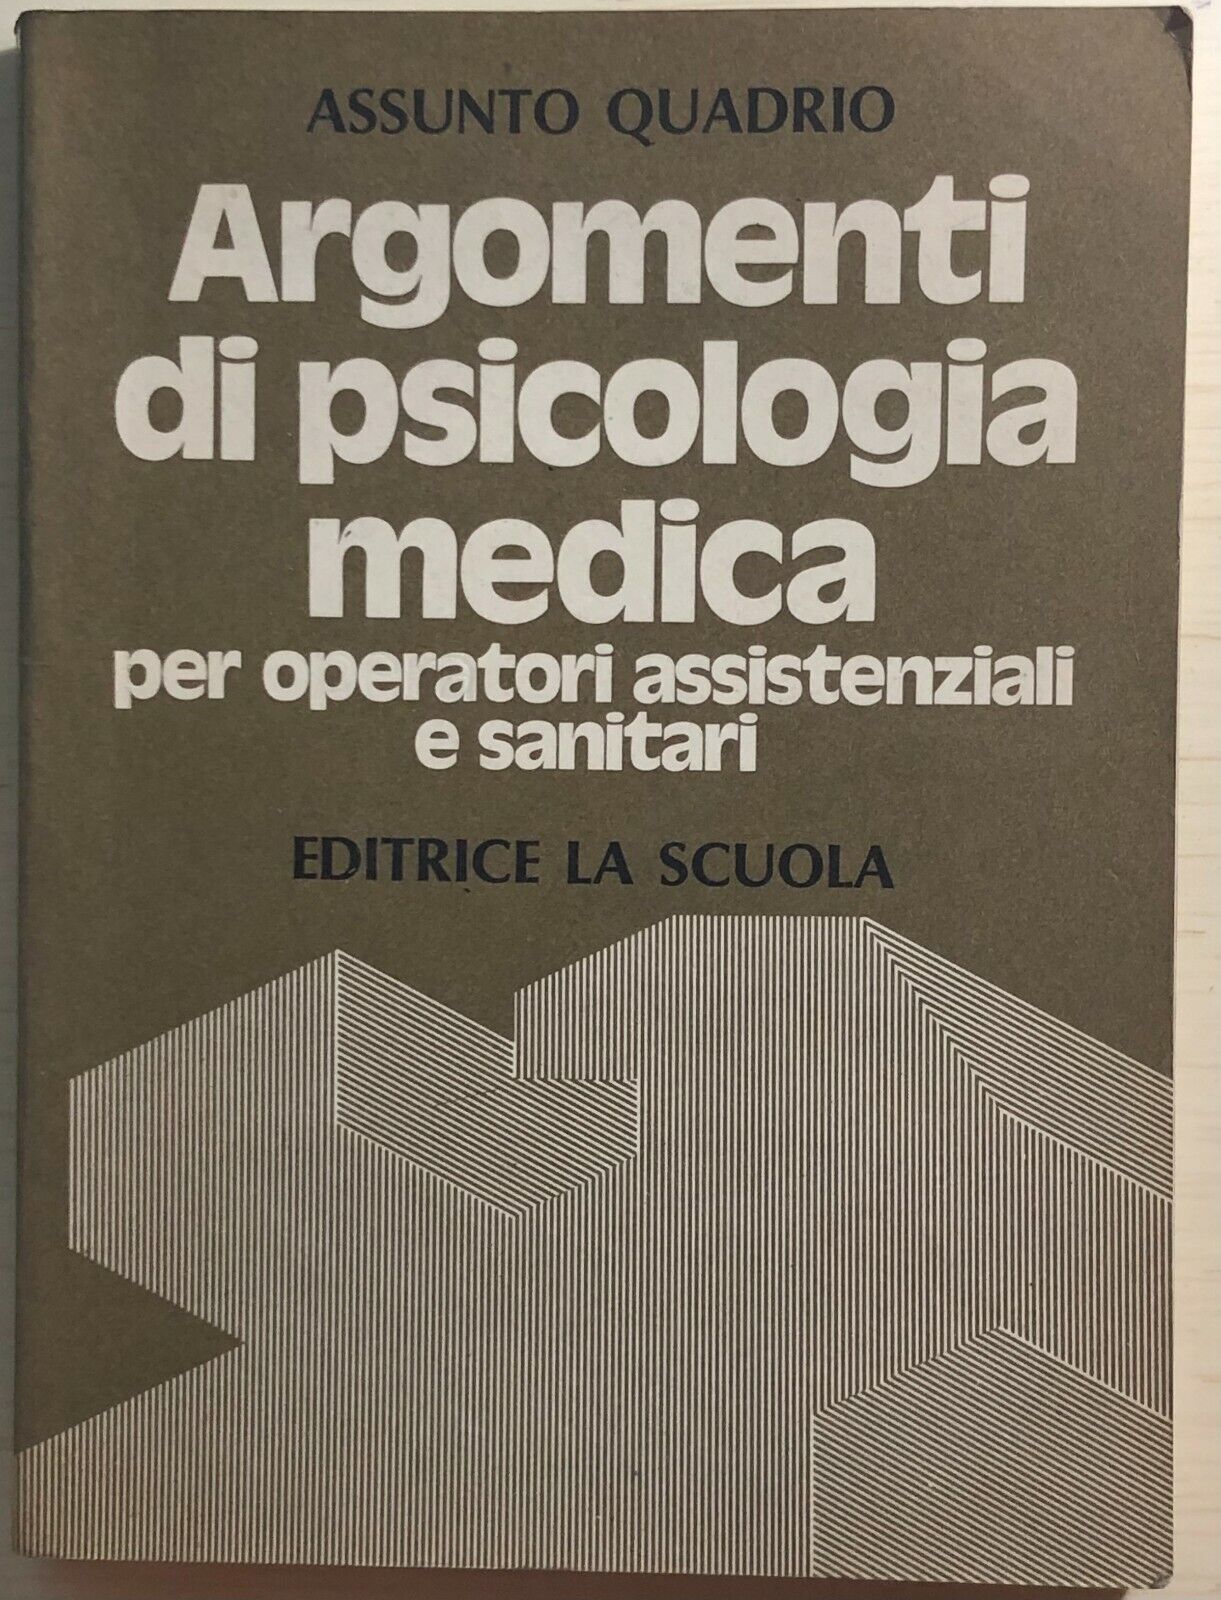 Argomenti di psicologia medica di Assunto Quadrio,  1980,  Editrice La Scuola